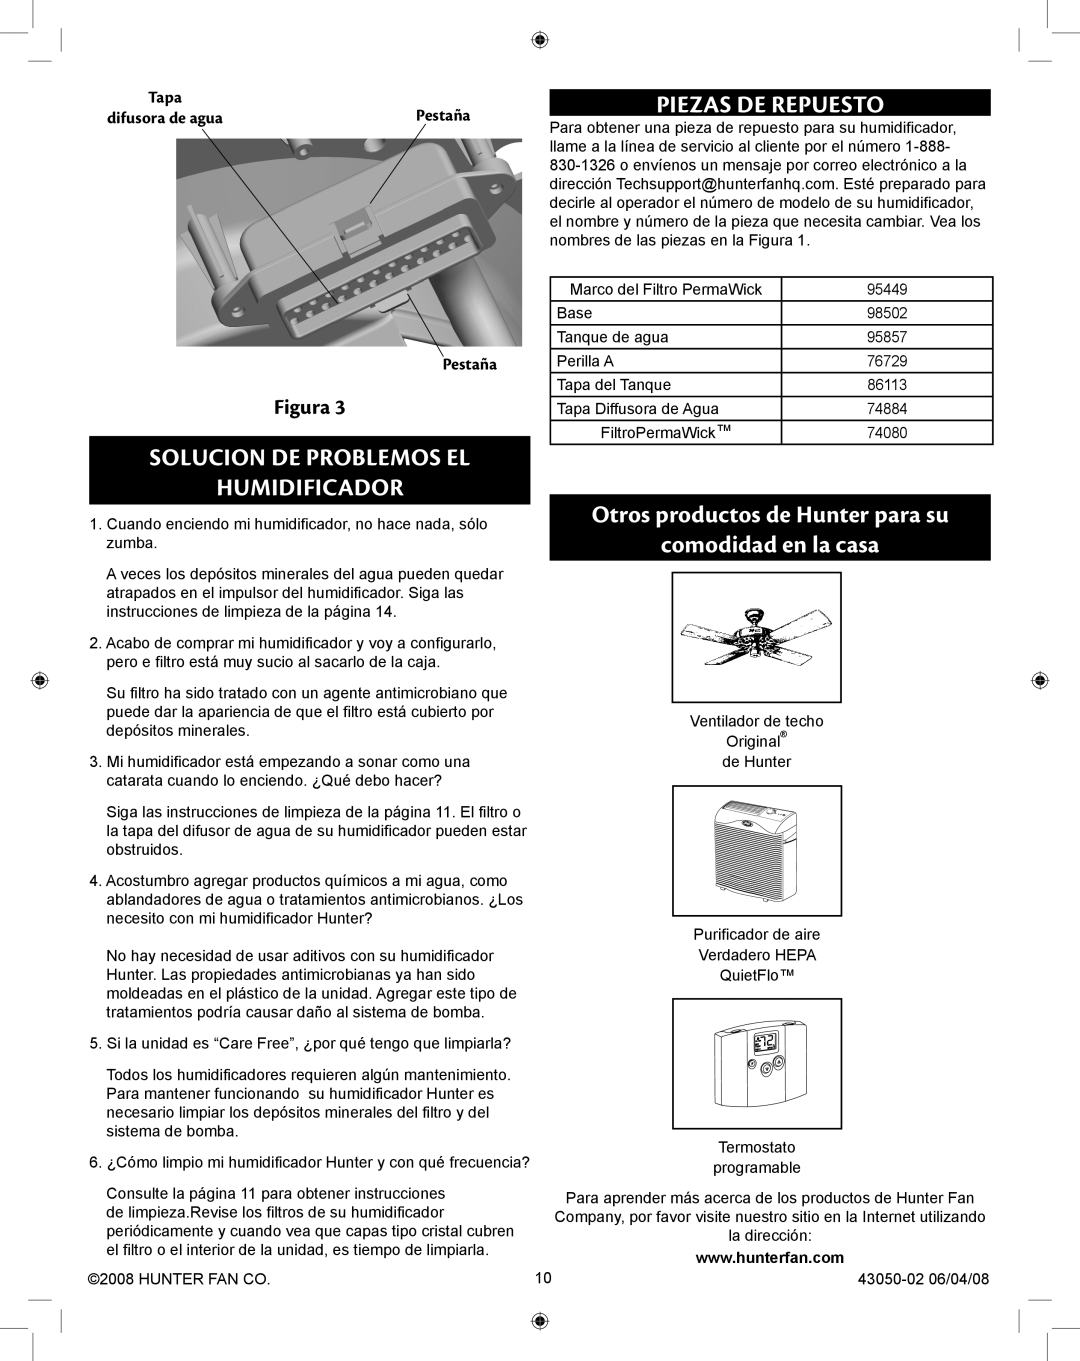 Hunter Fan 33283 manual Solucion de problemos el humidificador, Piezas de Repuesto, Pestaña, Figura 